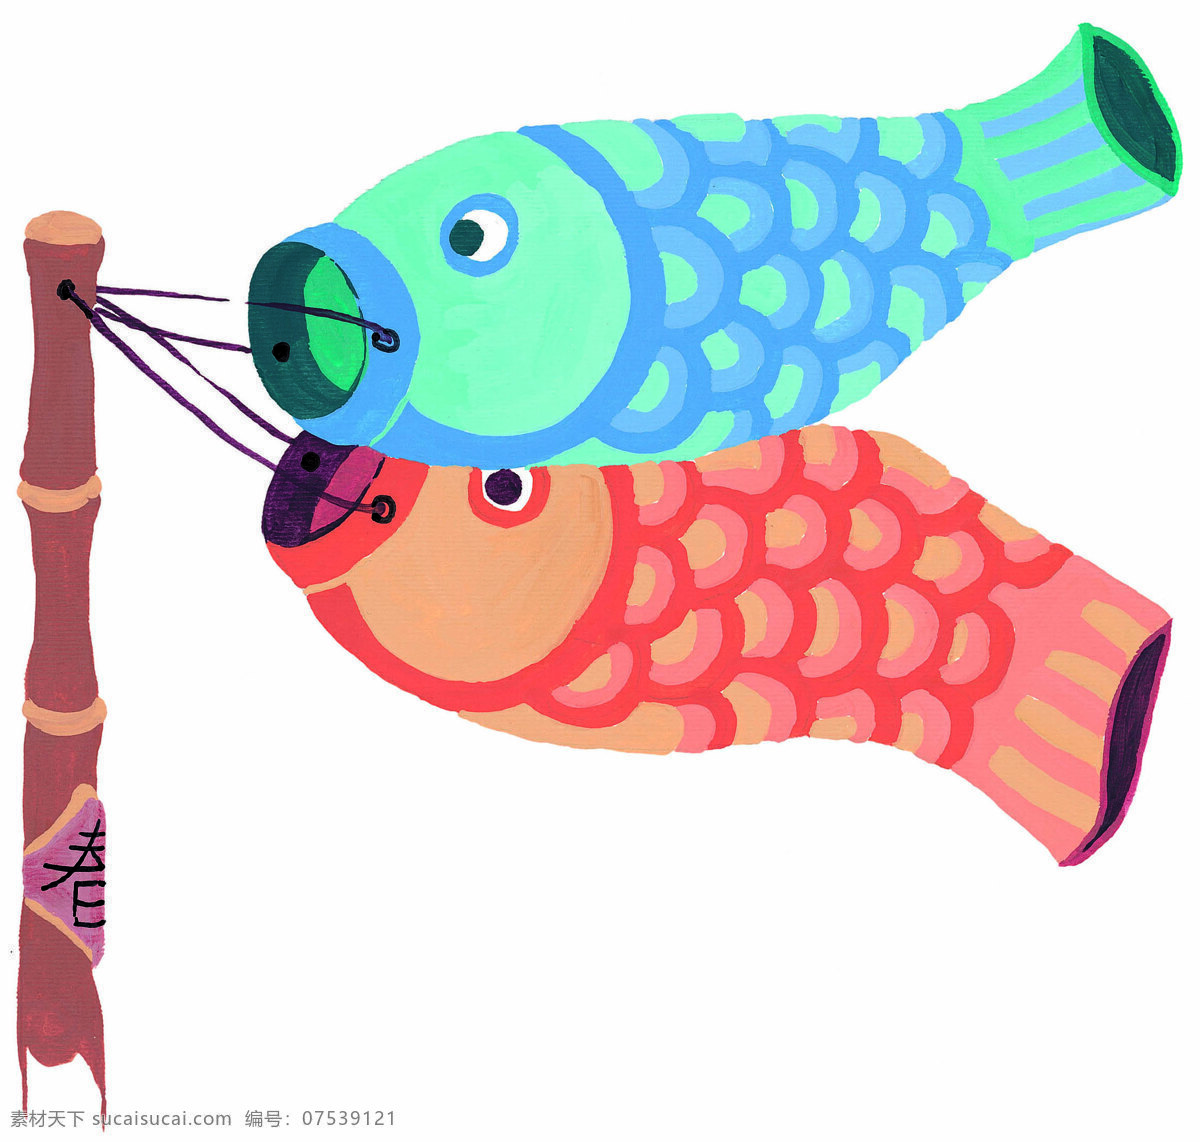 鱼 旗 飘飘 水彩画 卡通水彩画 新年水彩画 卡通 新年 美术作品 文化艺术